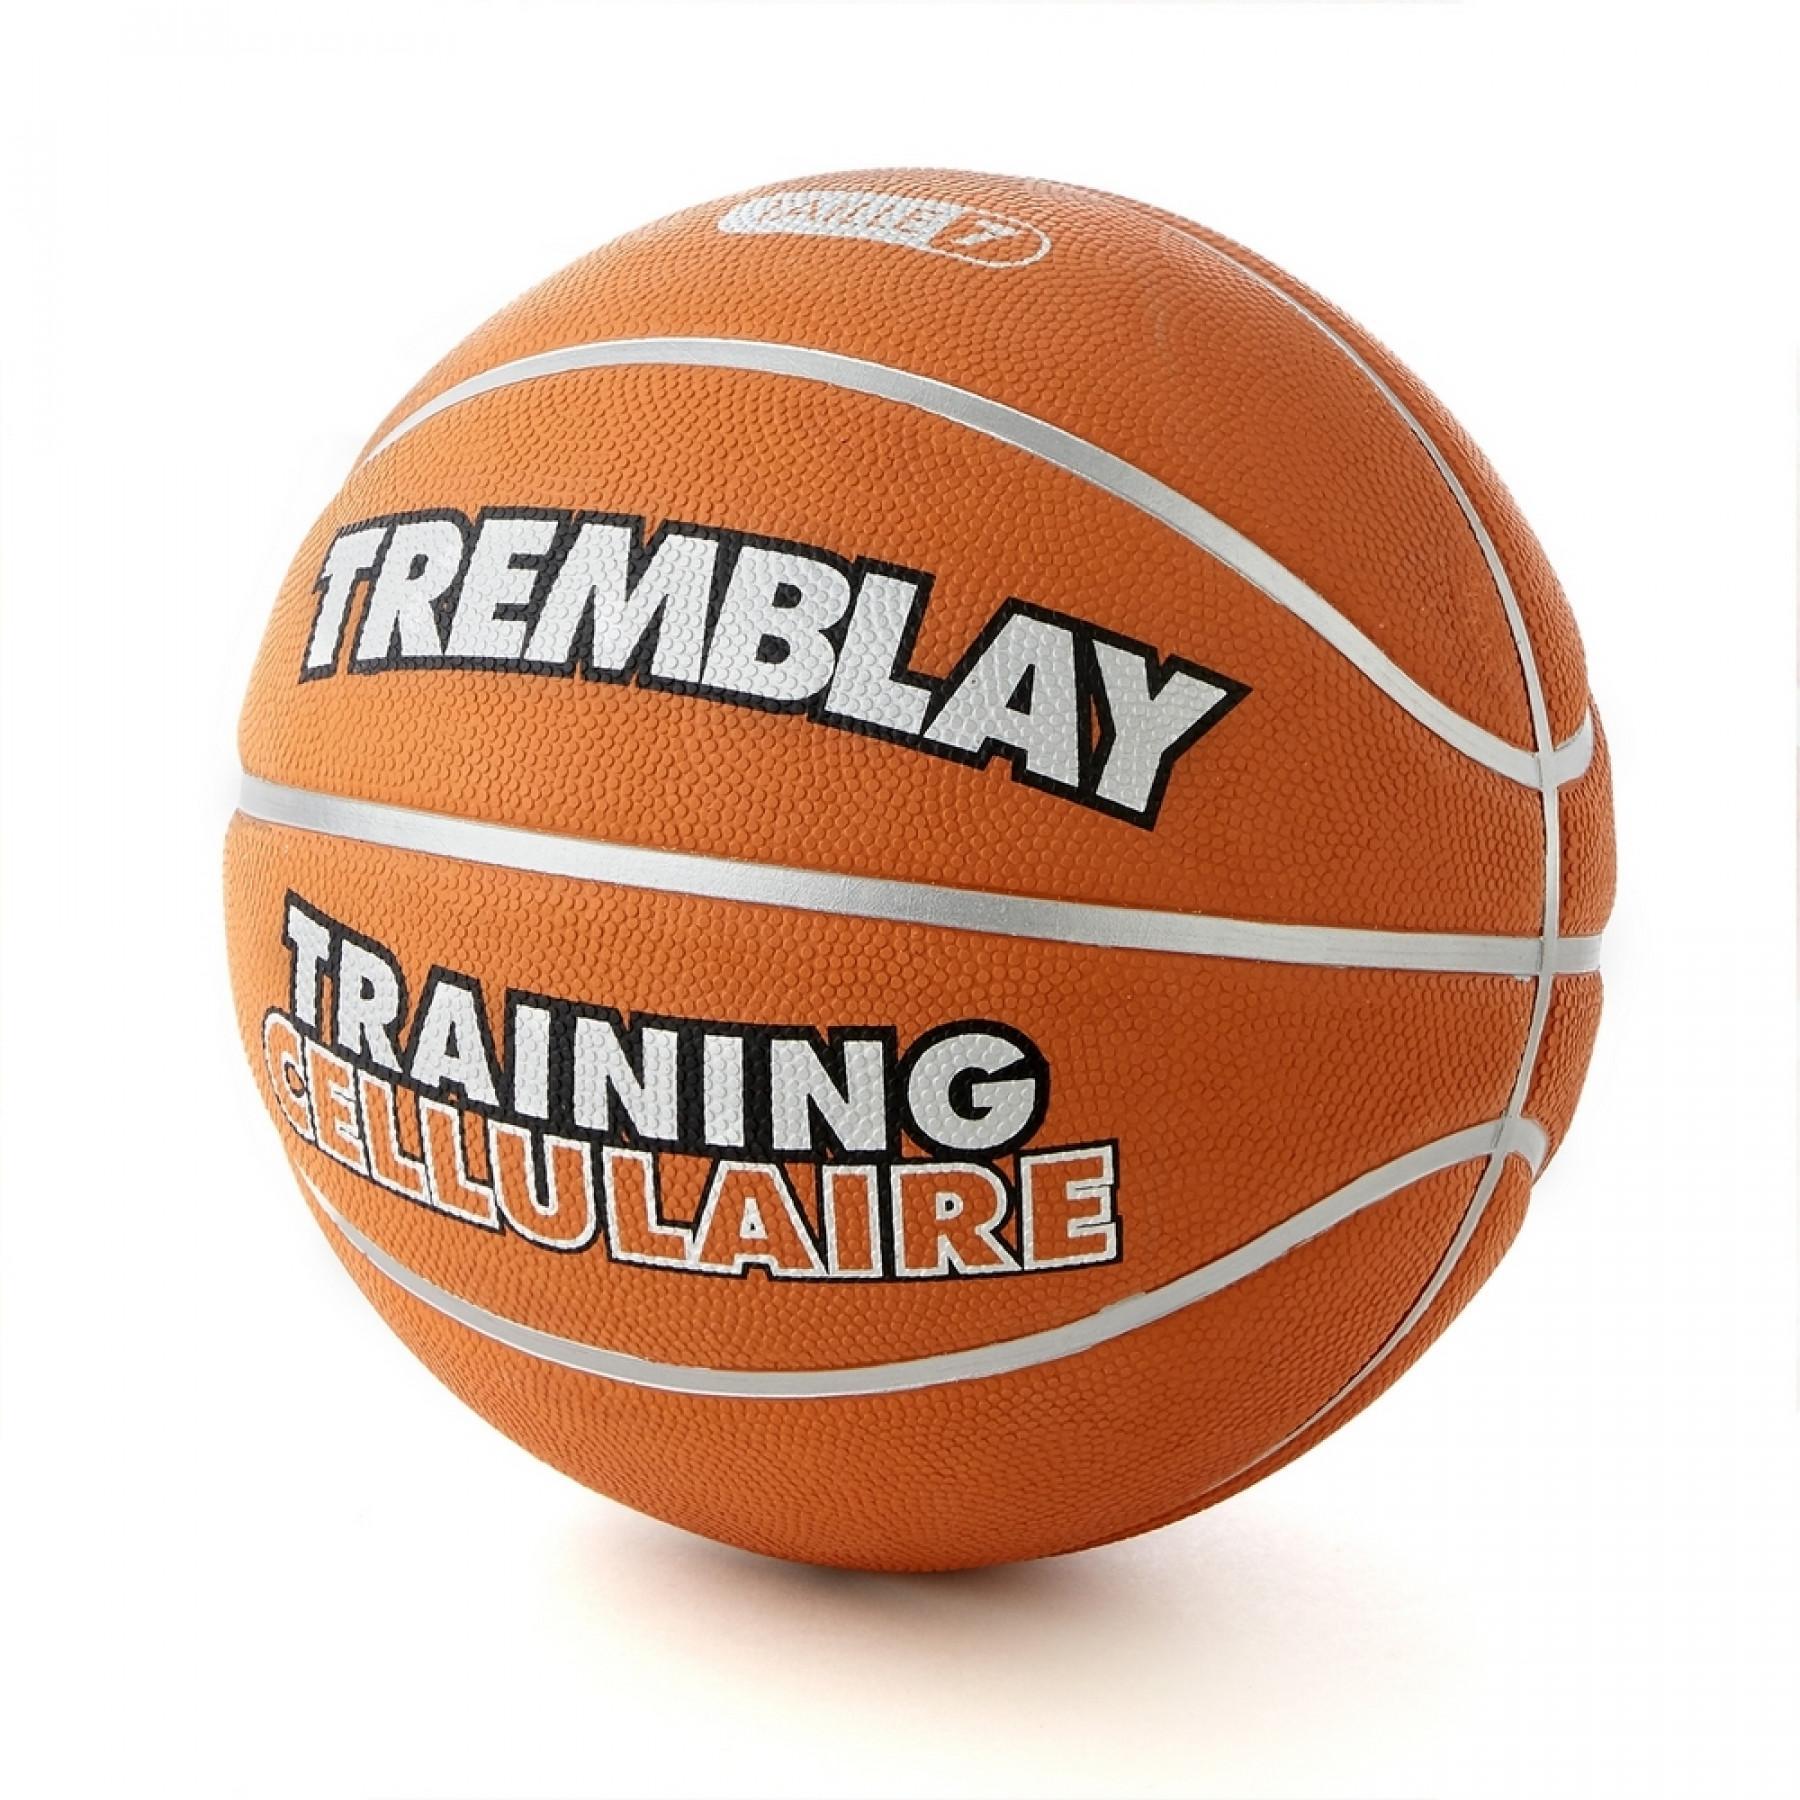 Piłka treningowa do koszykówki Tremblay